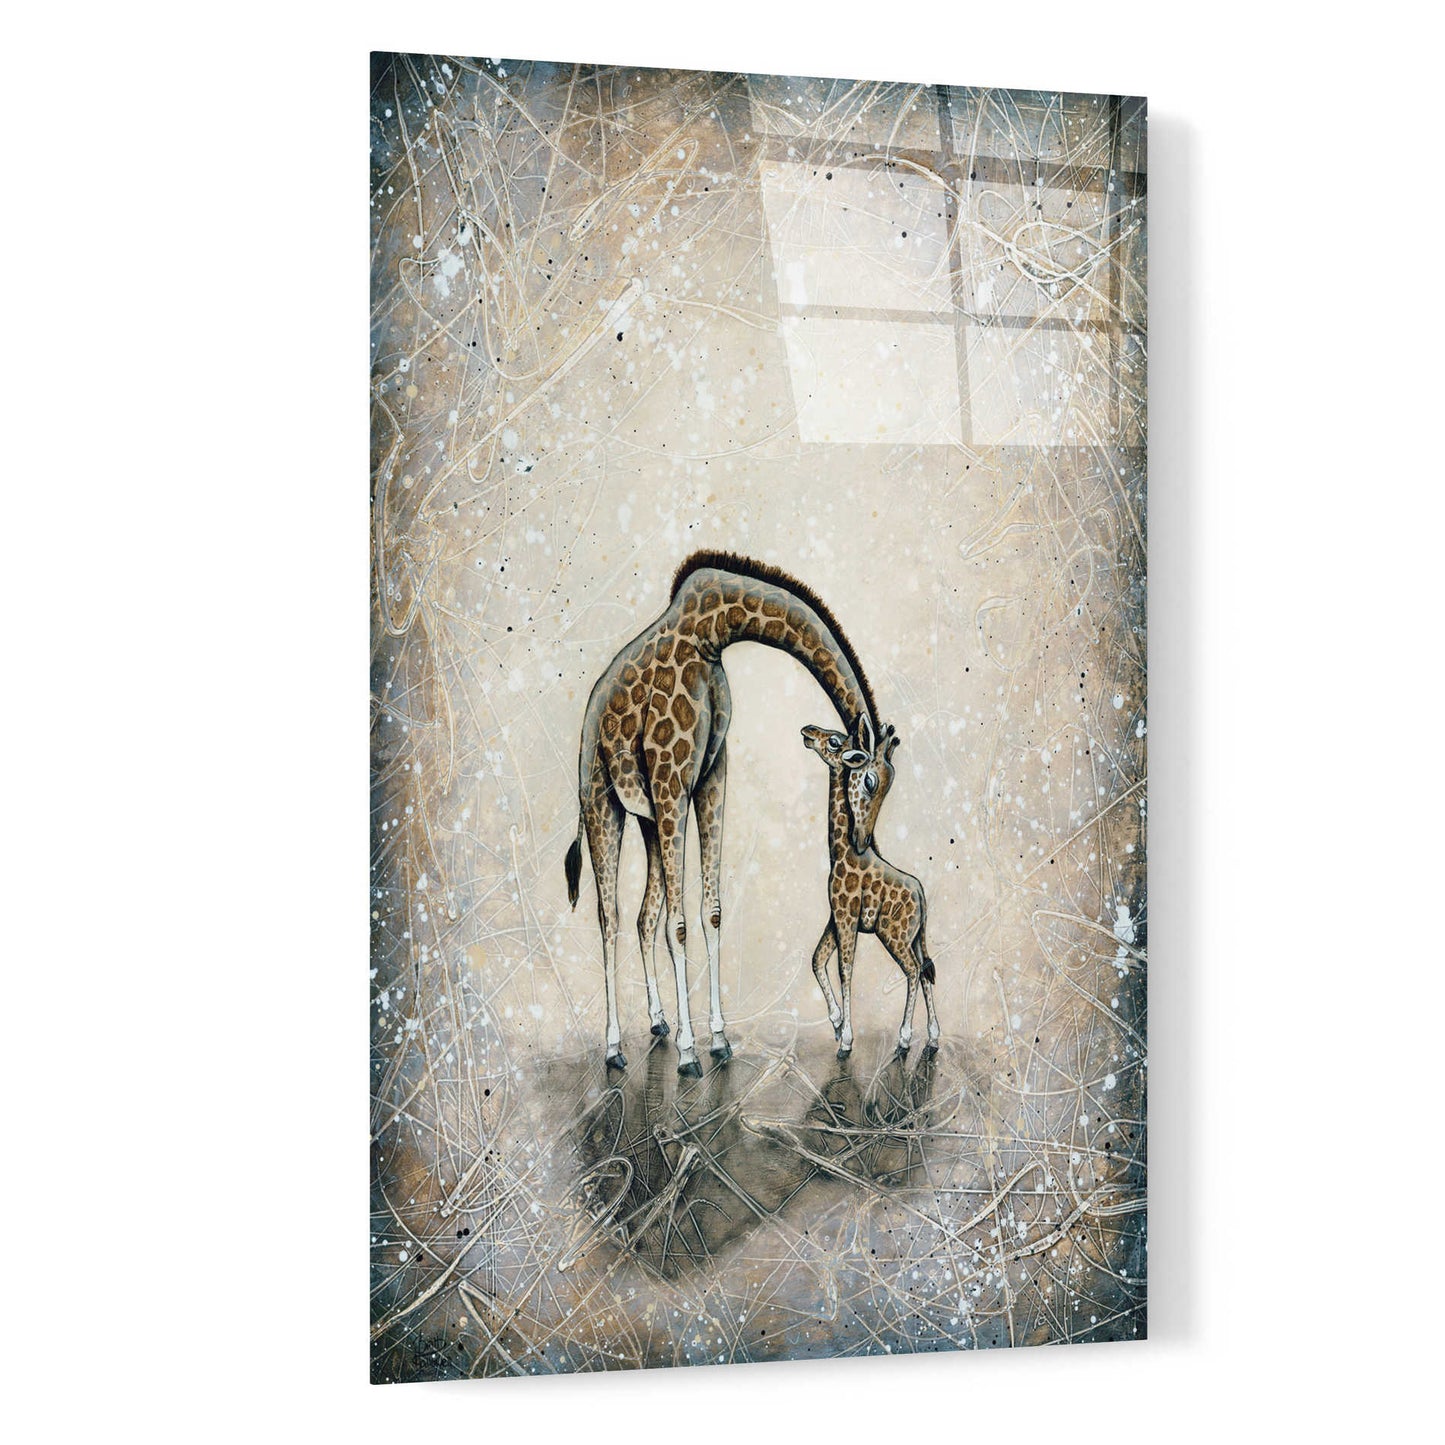 Epic Art 'My Love for You - Giraffes' by Britt Hallowell, Acrylic Glass Wall Art,16x24